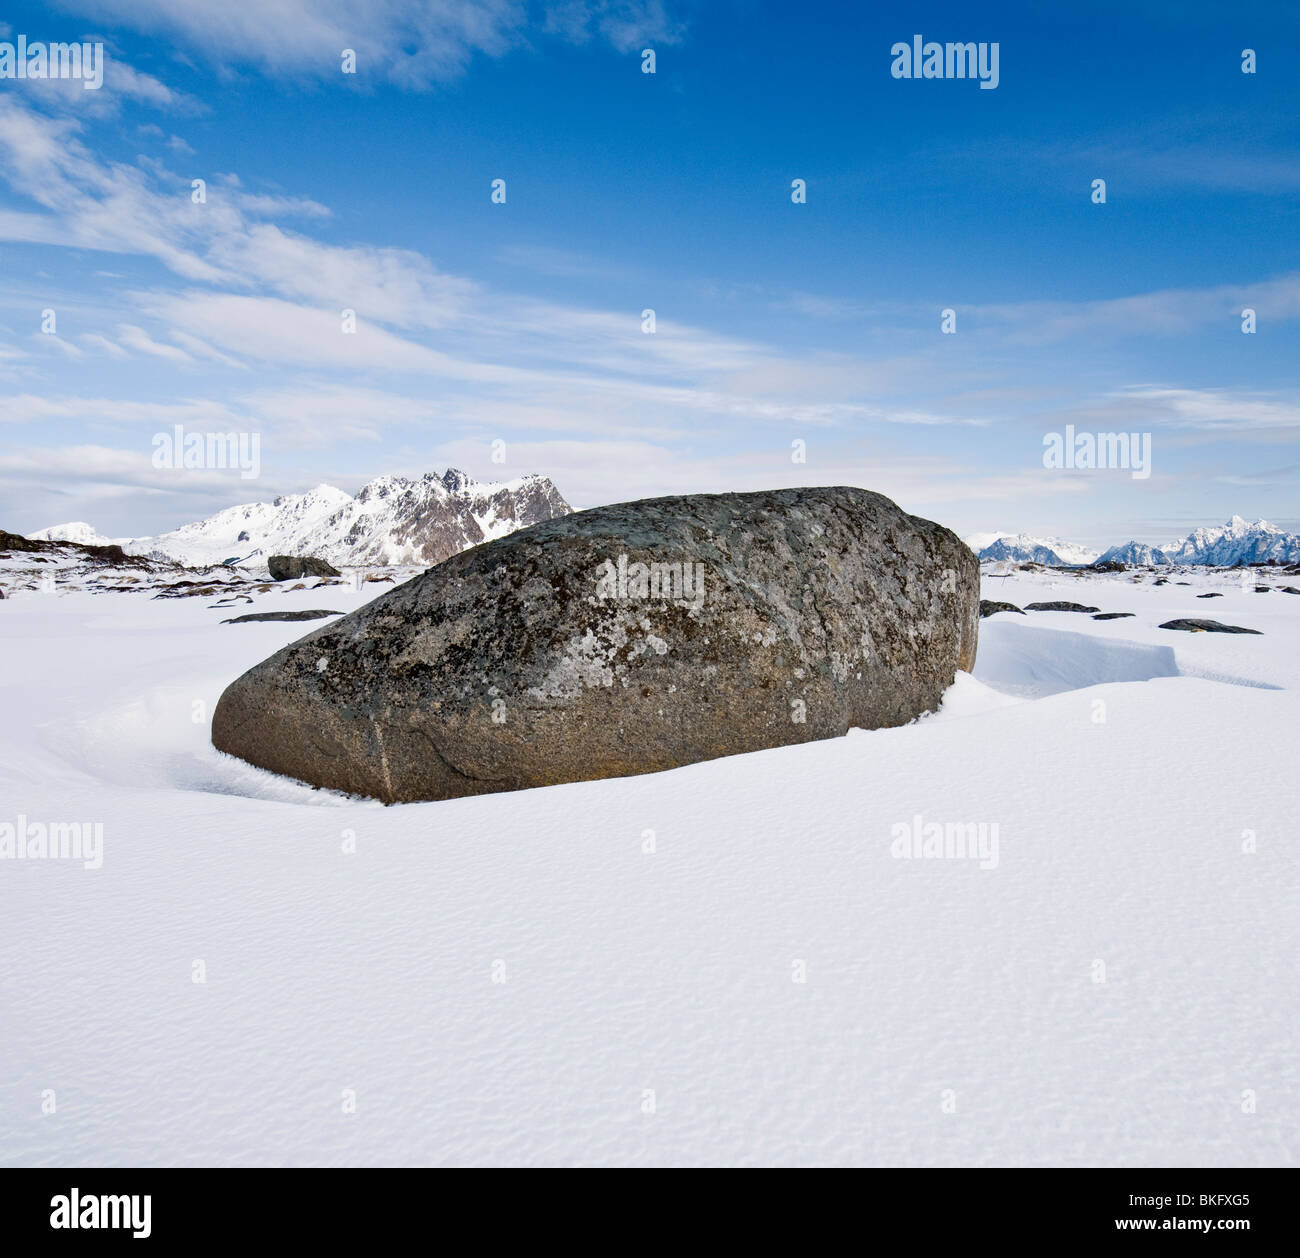 Large boulder in snow covered winter landscape, Near Stamsund, Vestvågøy, Lofoten islands, Norway Stock Photo